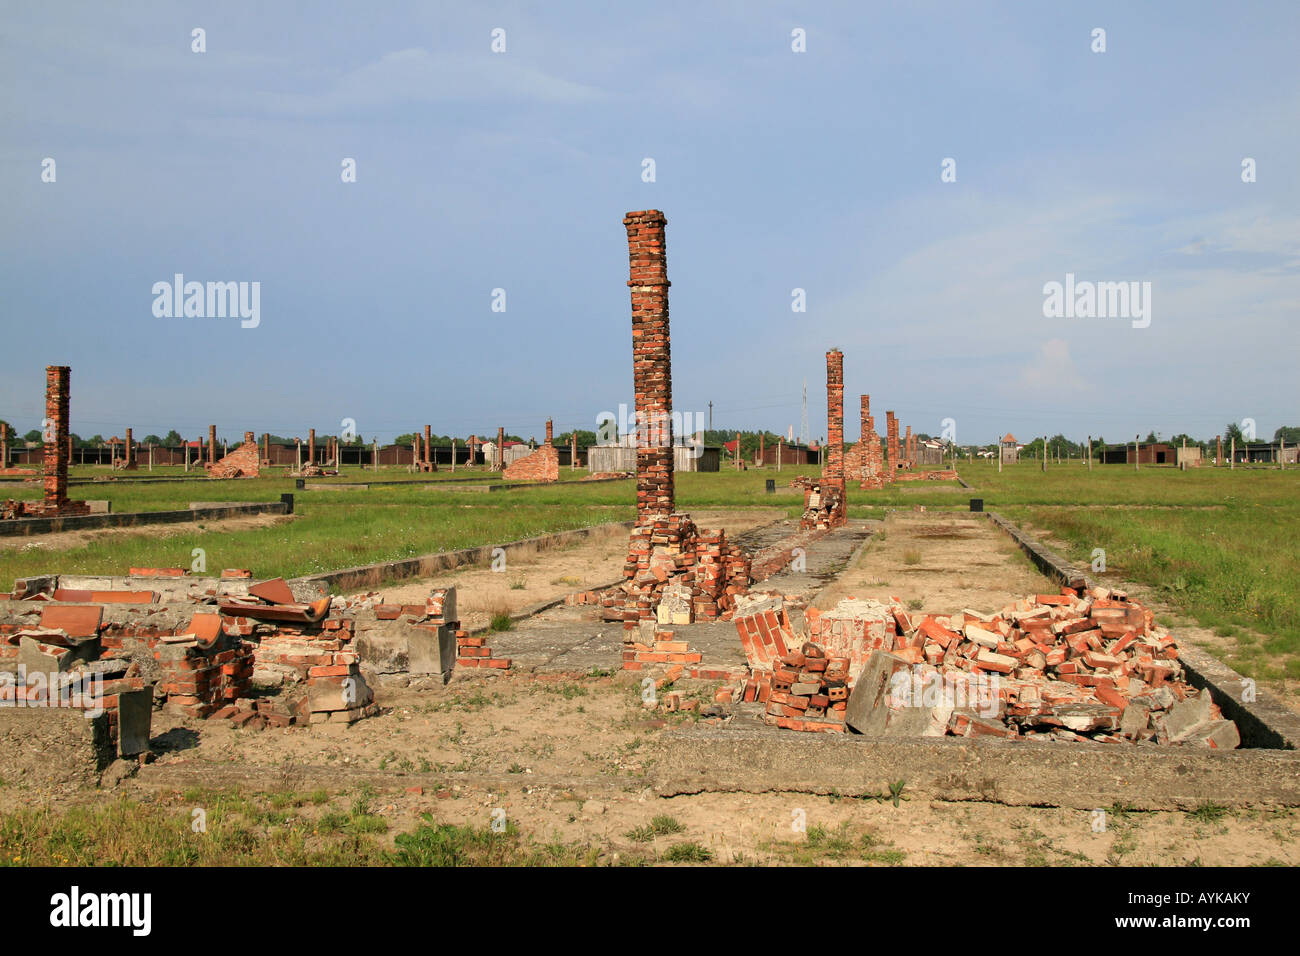 Dans les ruines de cheminée de restes d'une cabane en bois détruits dans l'ancien camp de concentration Nazi à Auschwitz Birkenau. Banque D'Images